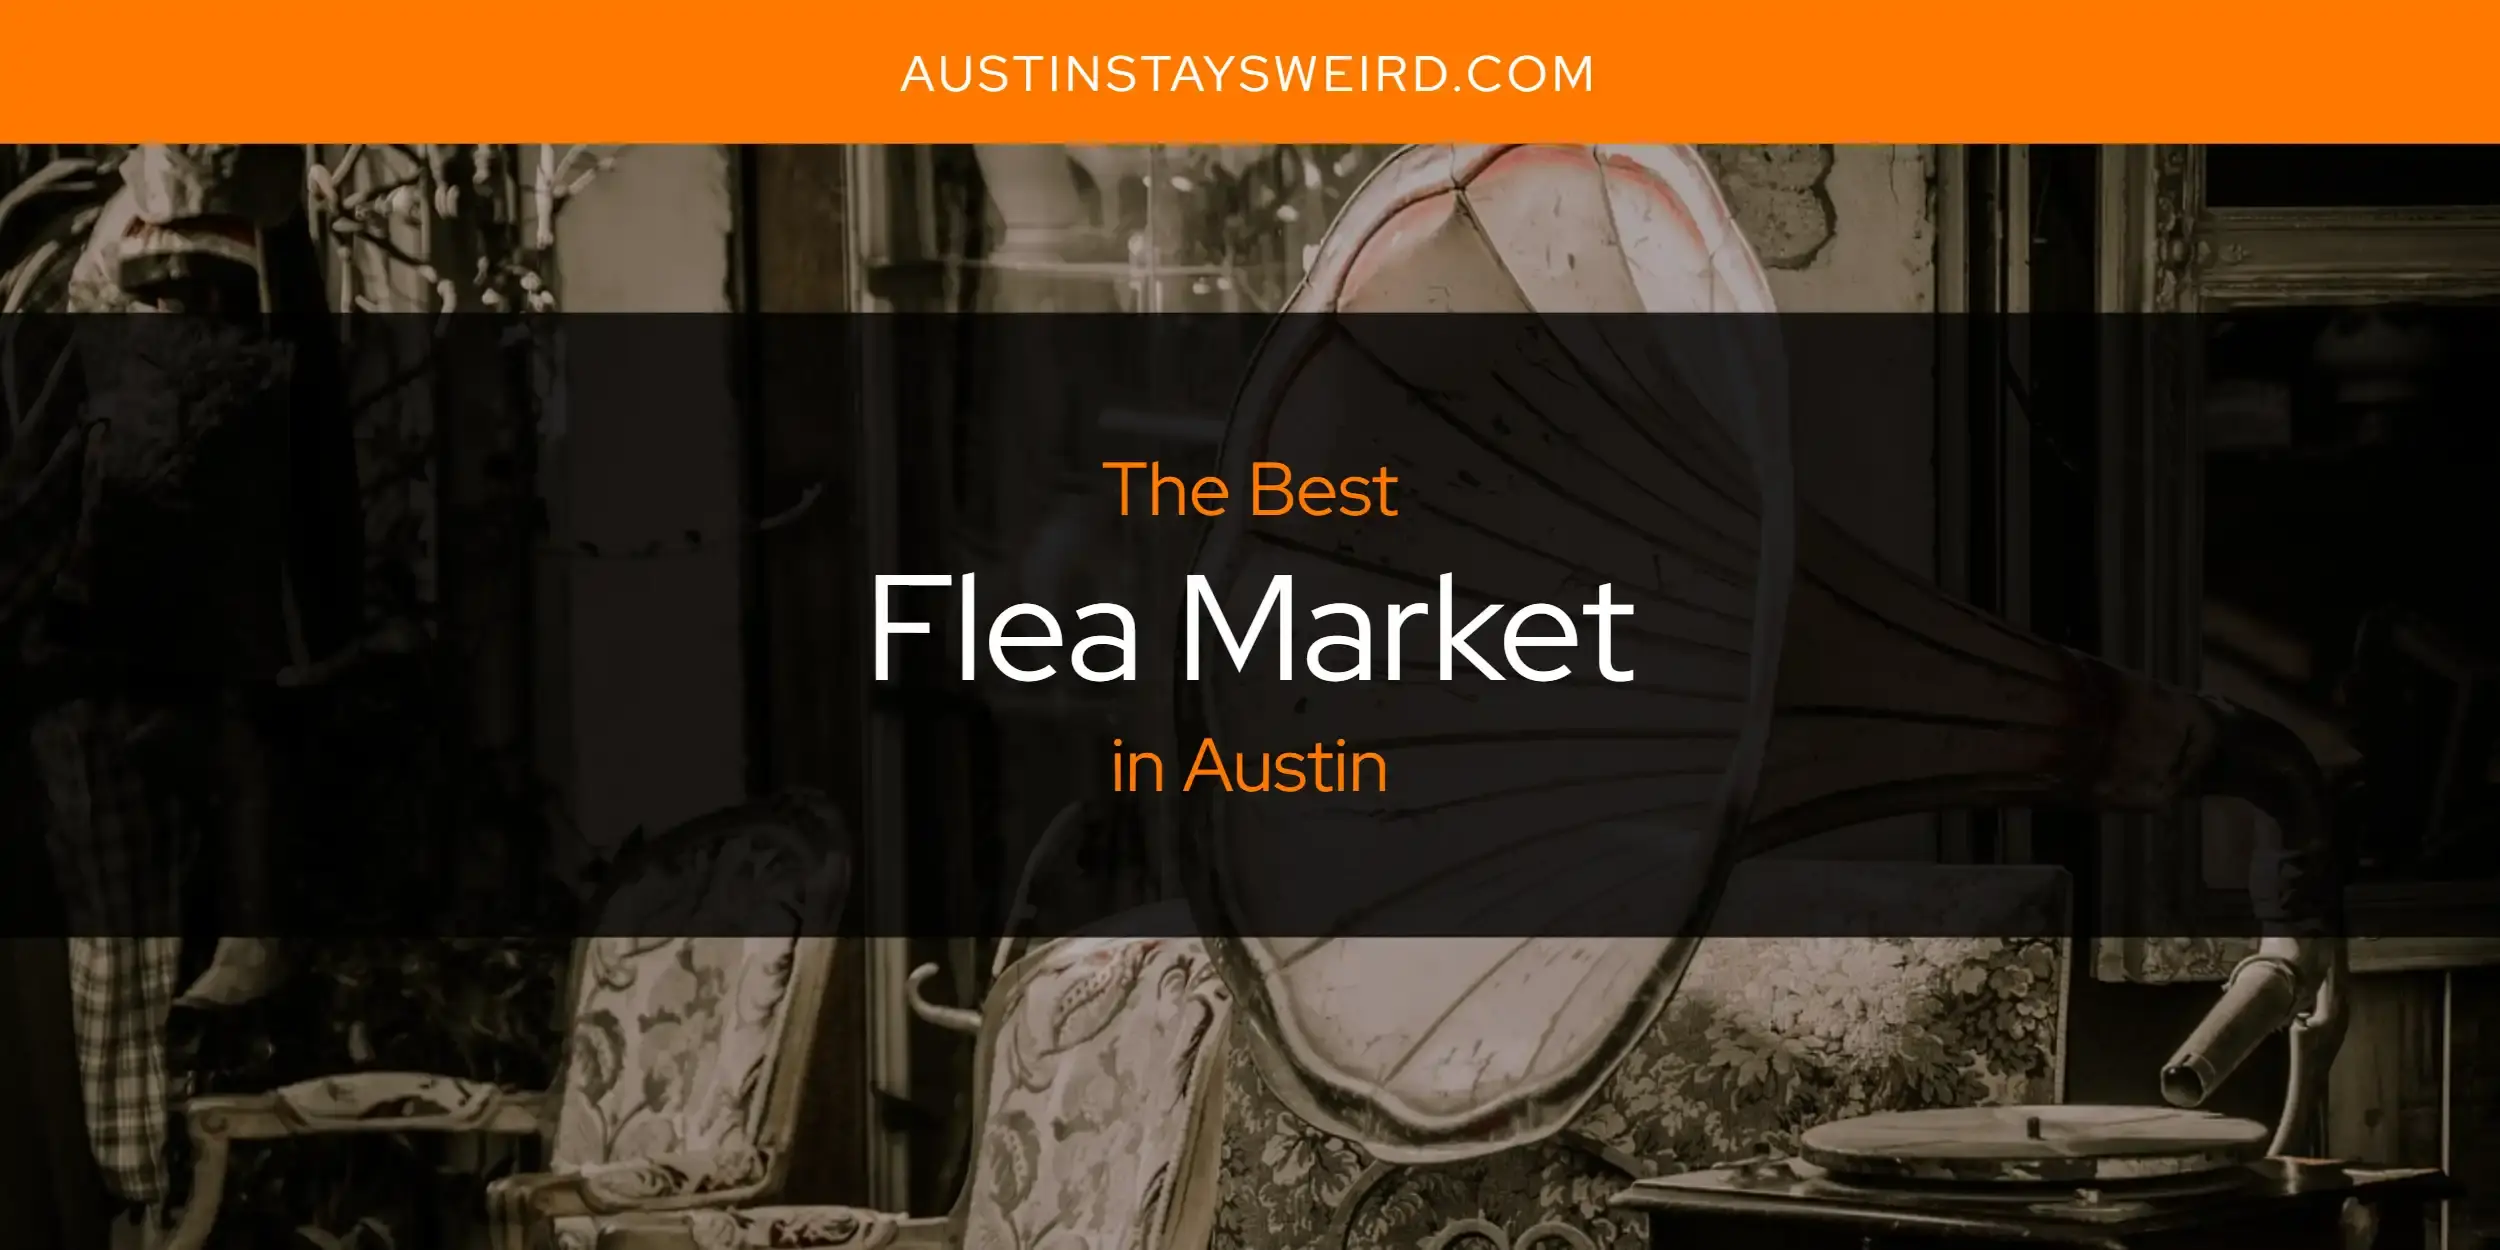 Best Flea Market in Austin? Here's the Top 8